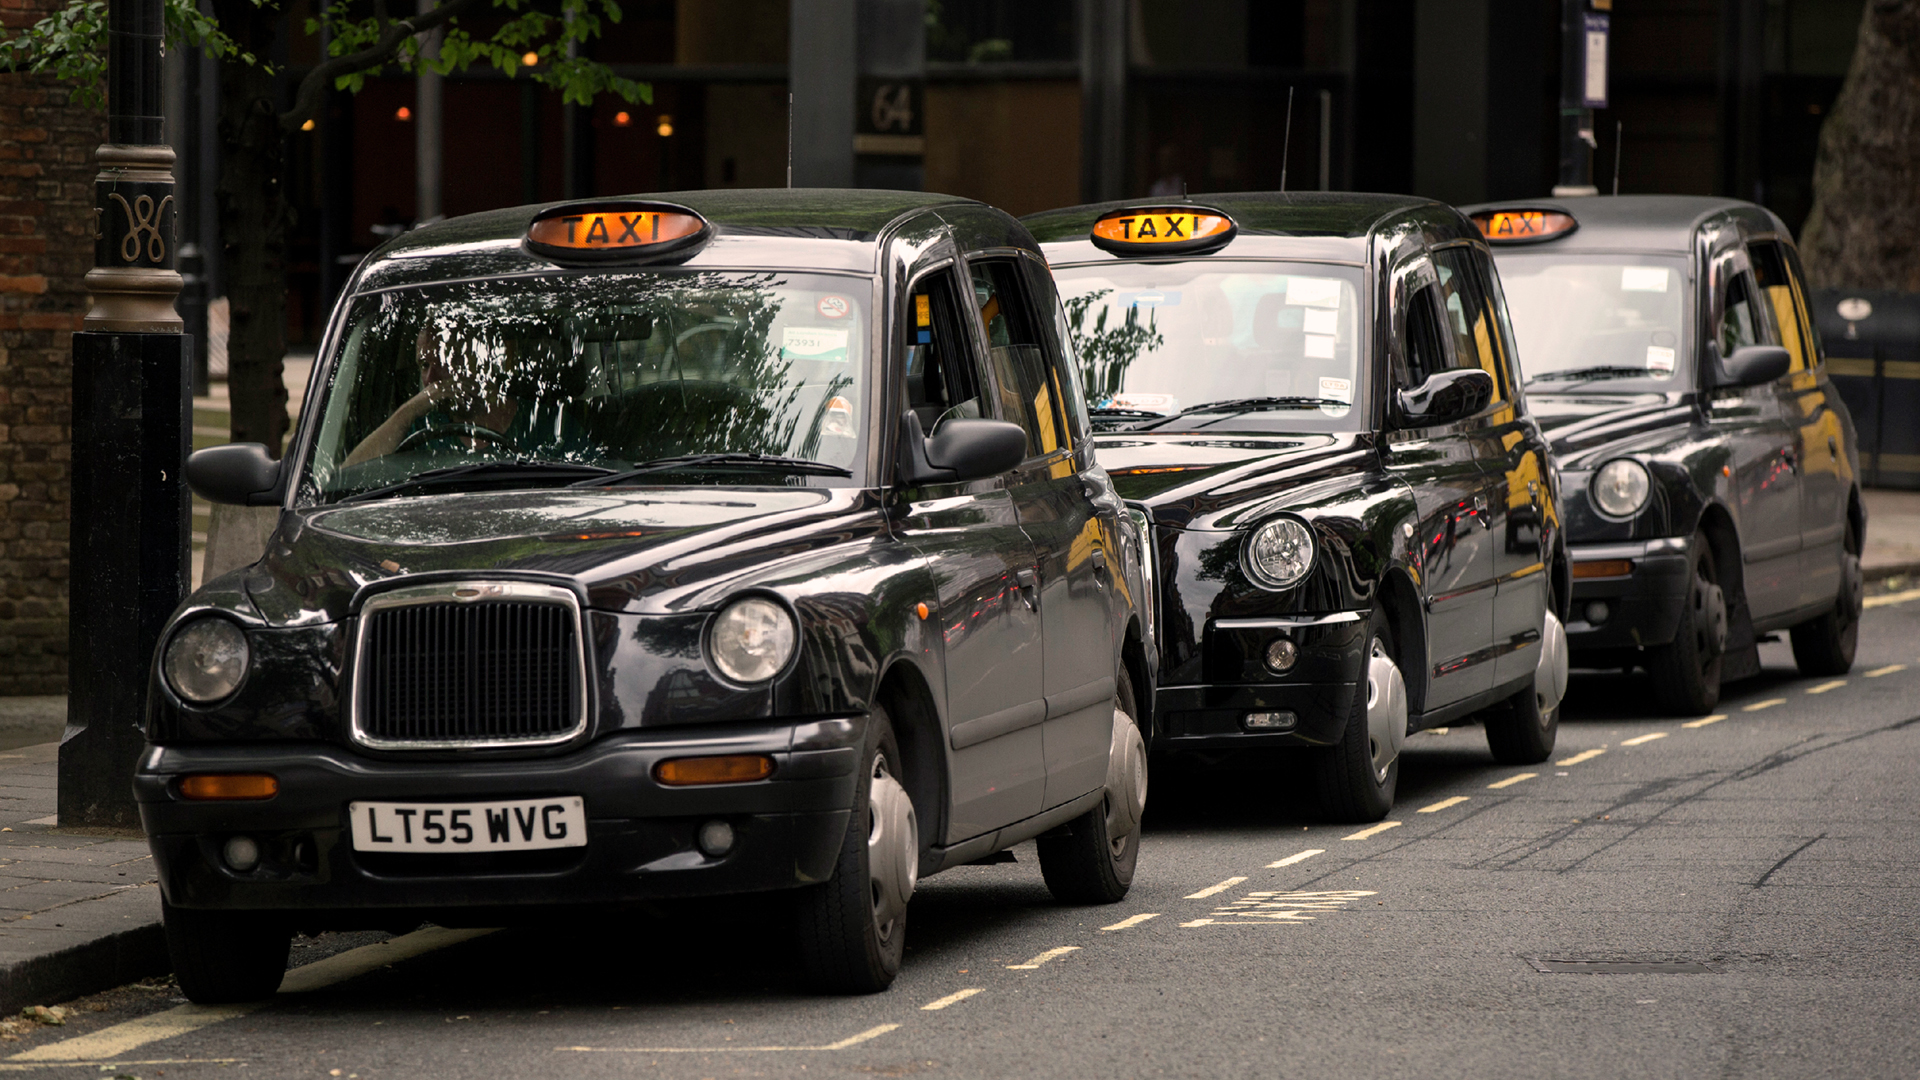 Los black cabs son un símbolo de Londres, tanto como los buses rojos de dos pisos